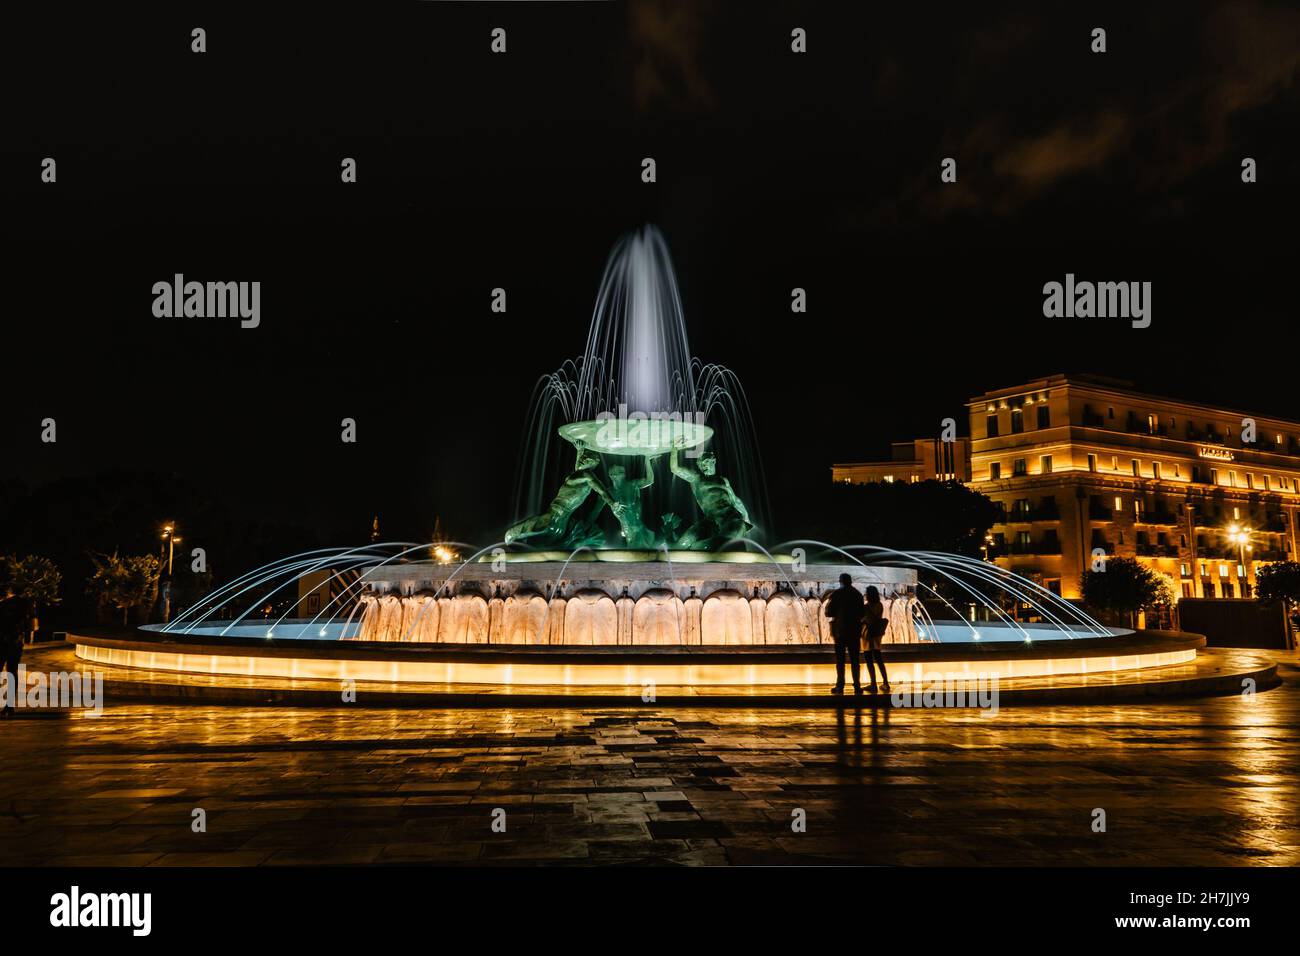 Célèbre fontaine illuminée de Tritons la nuit, trois sculptures mythologiques de Tritons en bronze tenant un immense bassin, point de repère moderne de la Valette. Banque D'Images